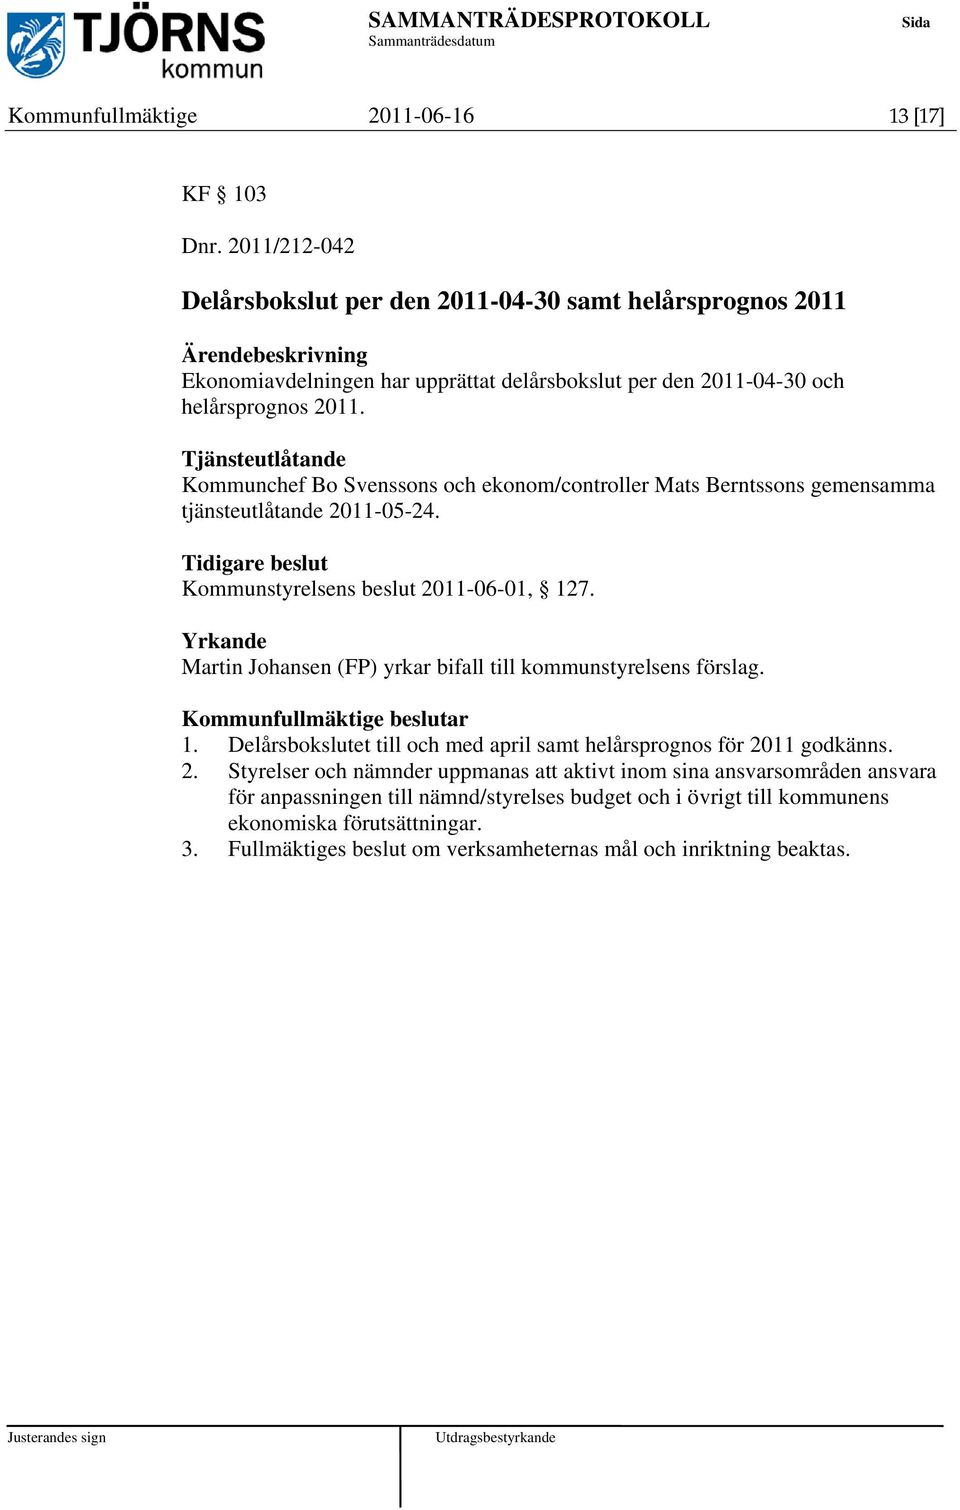 Tjänsteutlåtande Kommunchef Bo Svenssons och ekonom/controller Mats Berntssons gemensamma tjänsteutlåtande 2011-05-24. Tidigare beslut Kommunstyrelsens beslut 2011-06-01, 127.